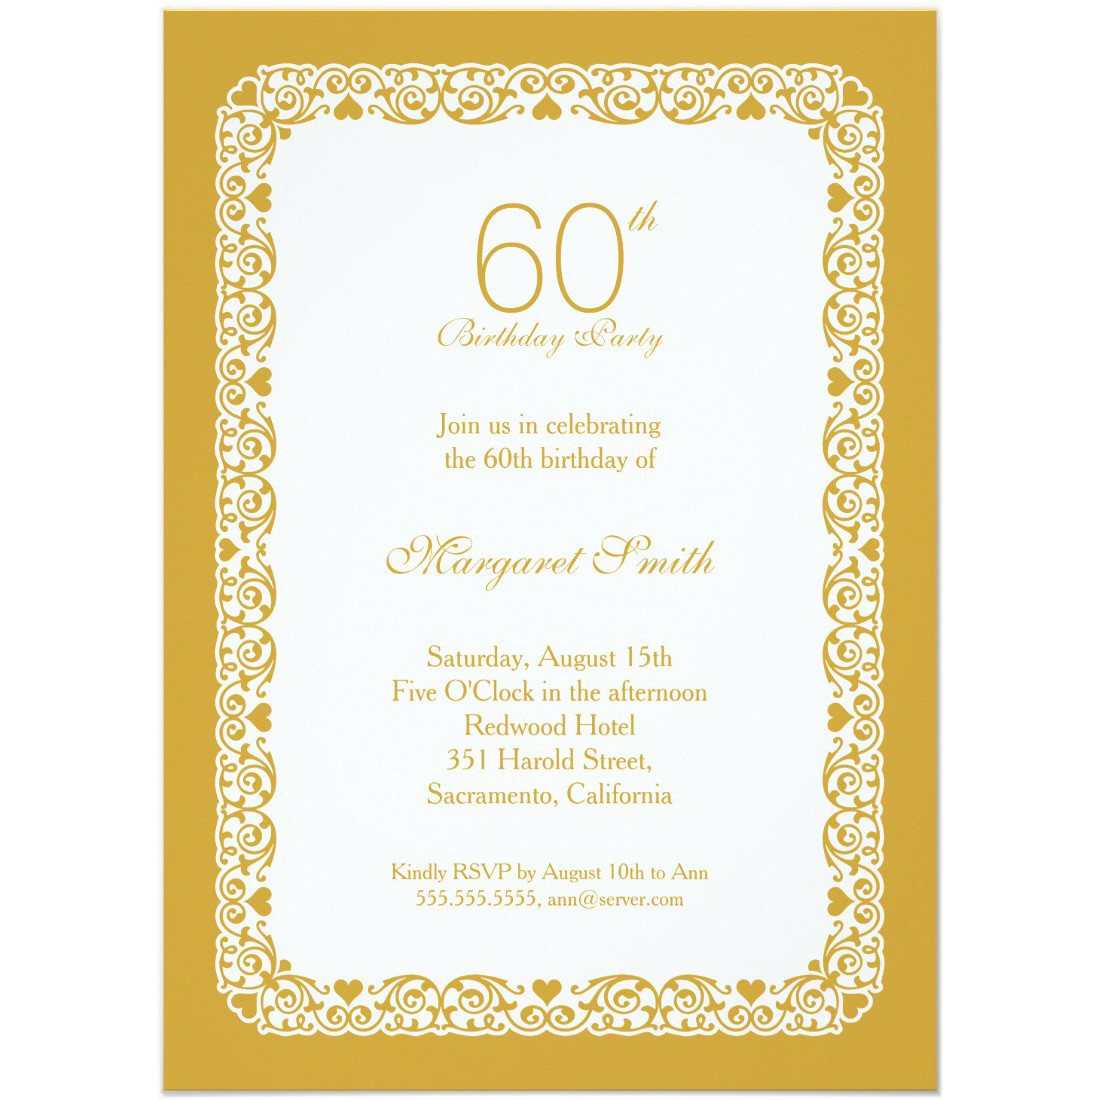 Personalized Birthday Invitations
 Elegant personalized 60th birthday party invitations